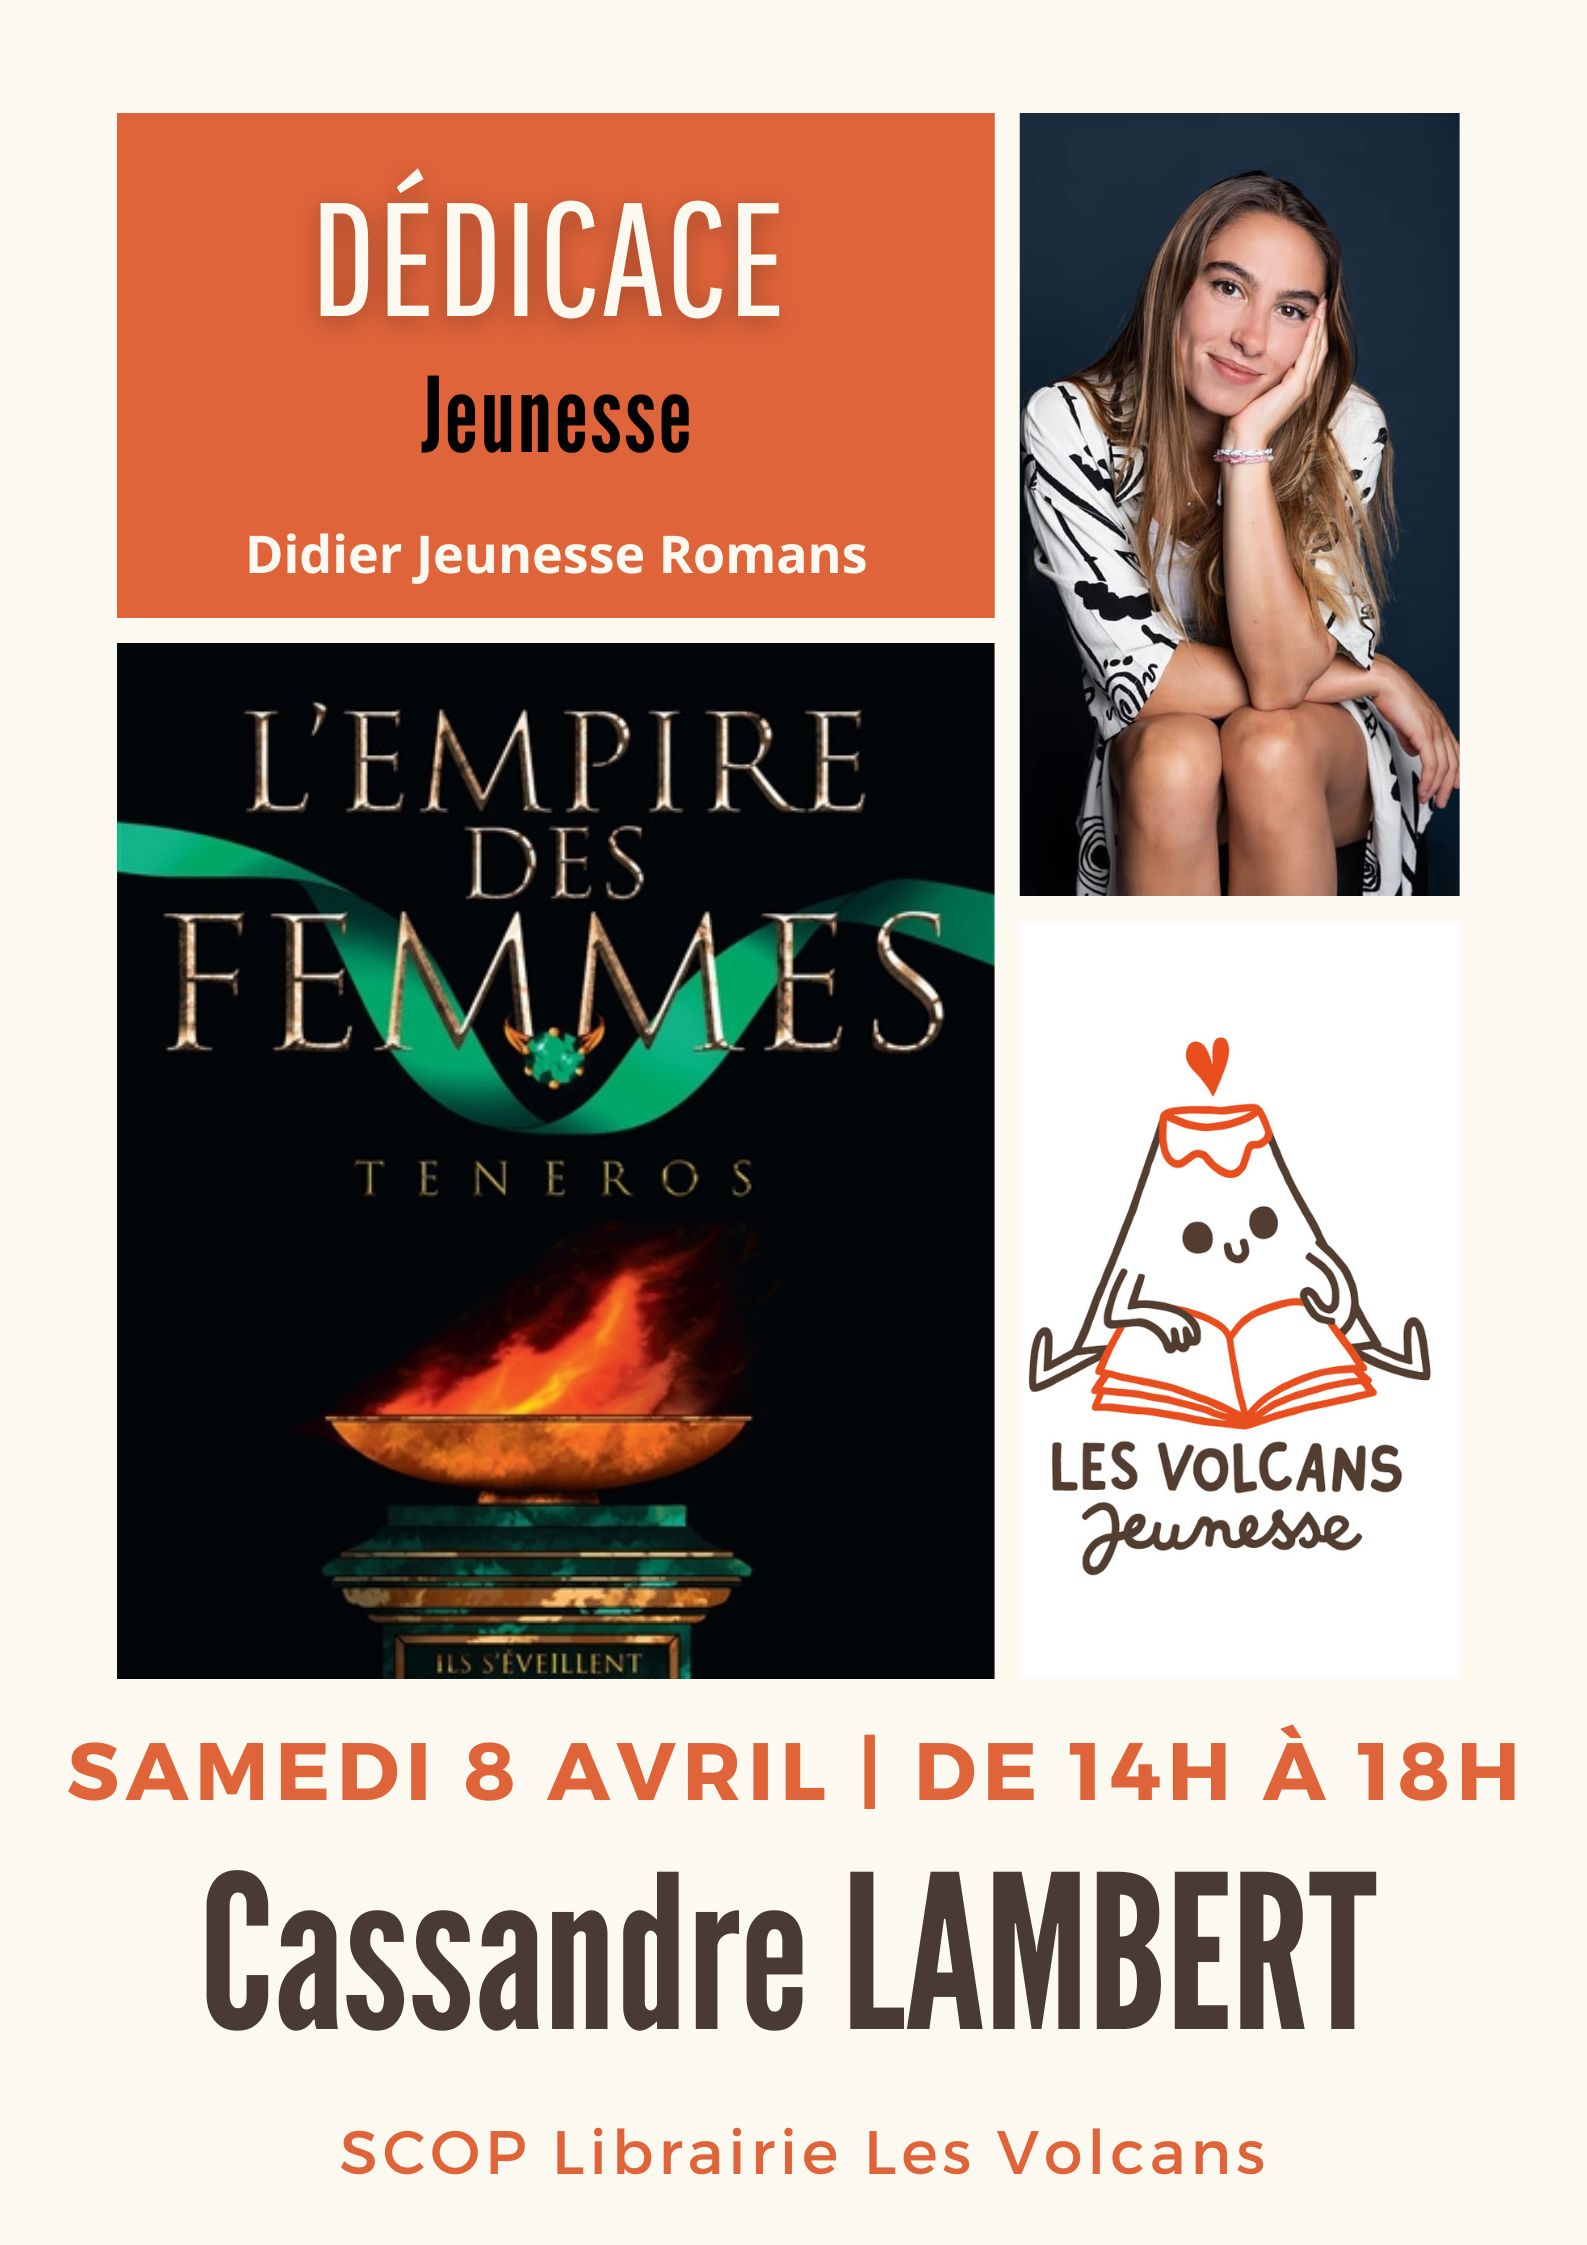 Les Volcans - Dédicace jeunesse Cassandre LAMBERT pour L'Empire des Femmes,  Didier jeunesse.